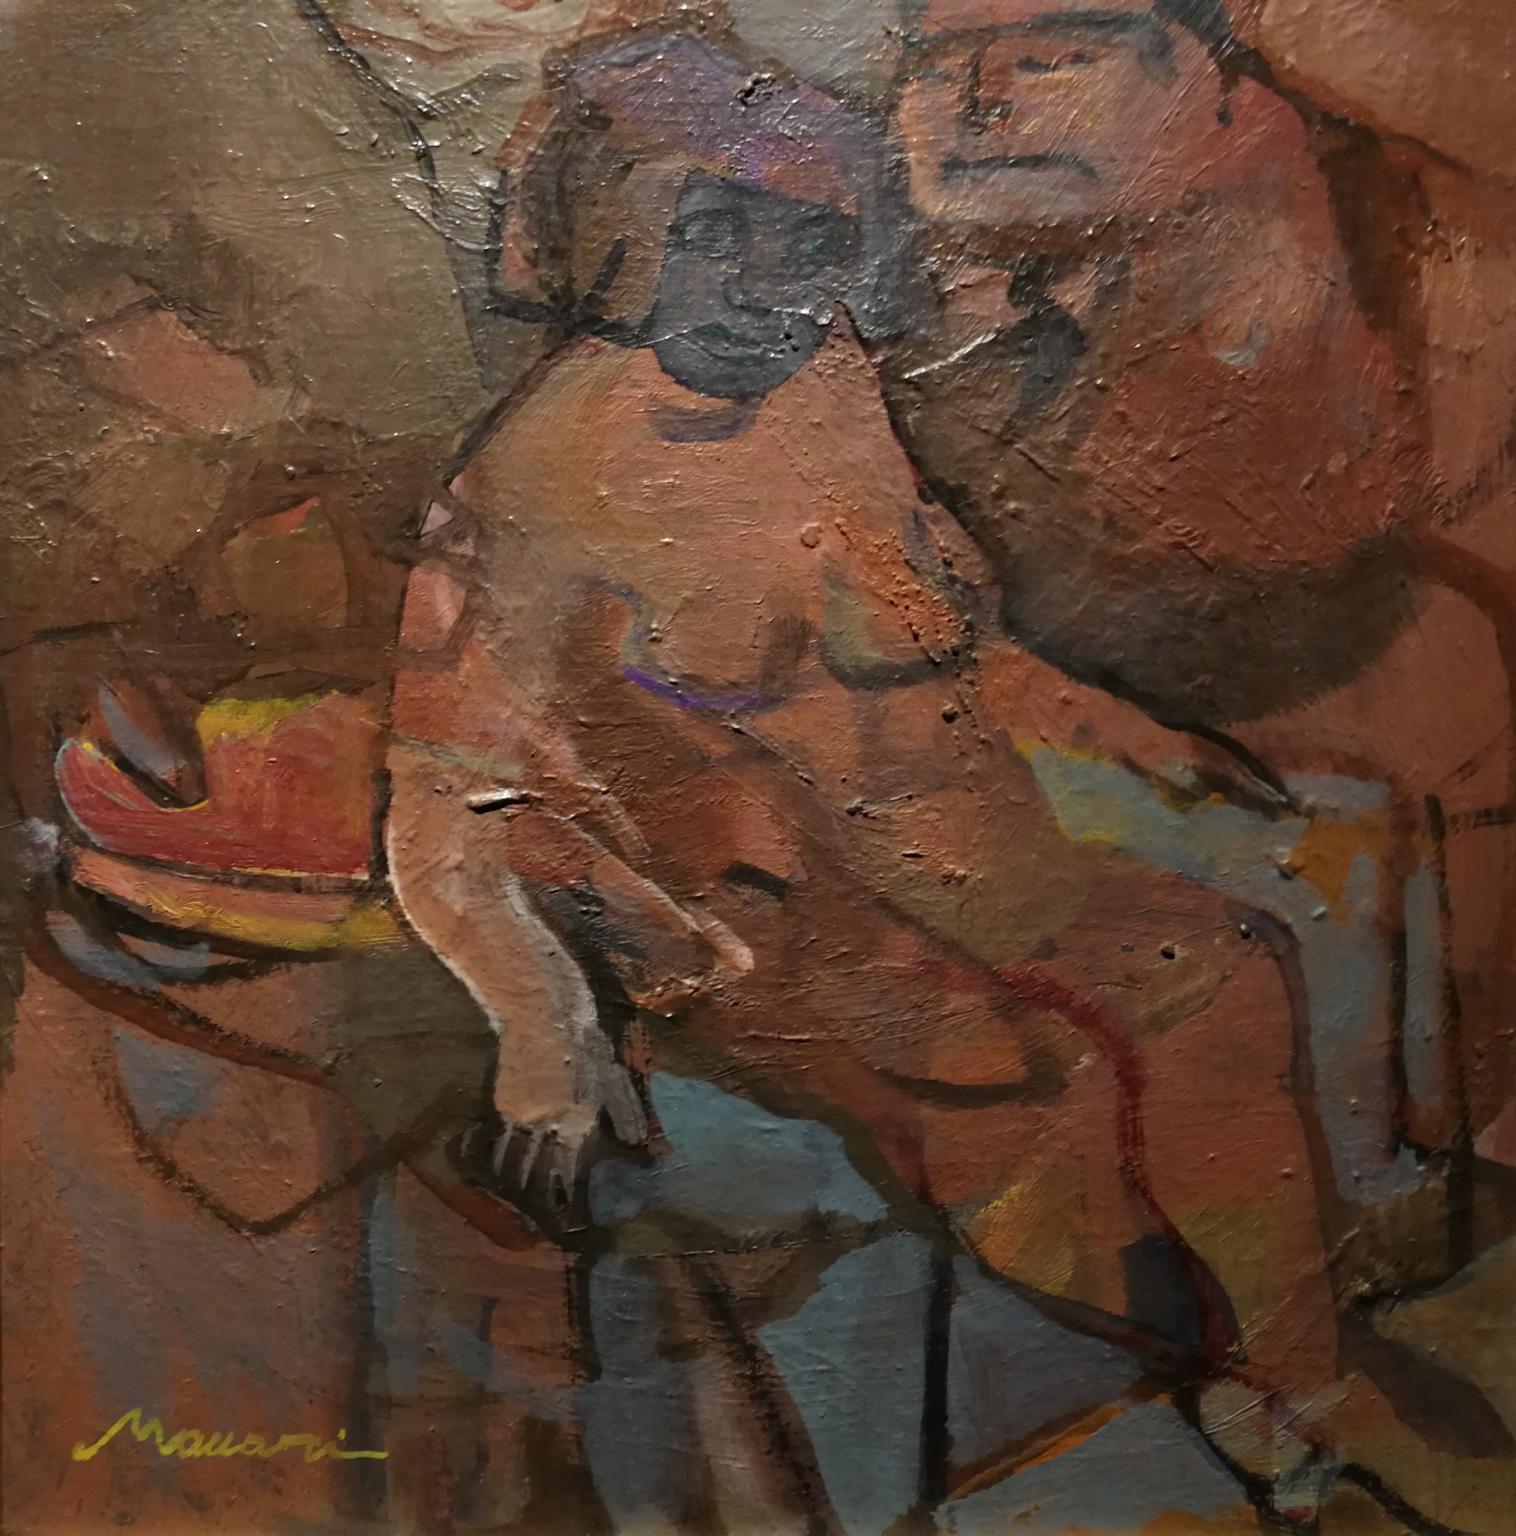 Postimpressionistisches figuratives Gemälde in Öl auf Leinwand, signiert von M. Maccari, 1956 – Painting von  Mino Maccari